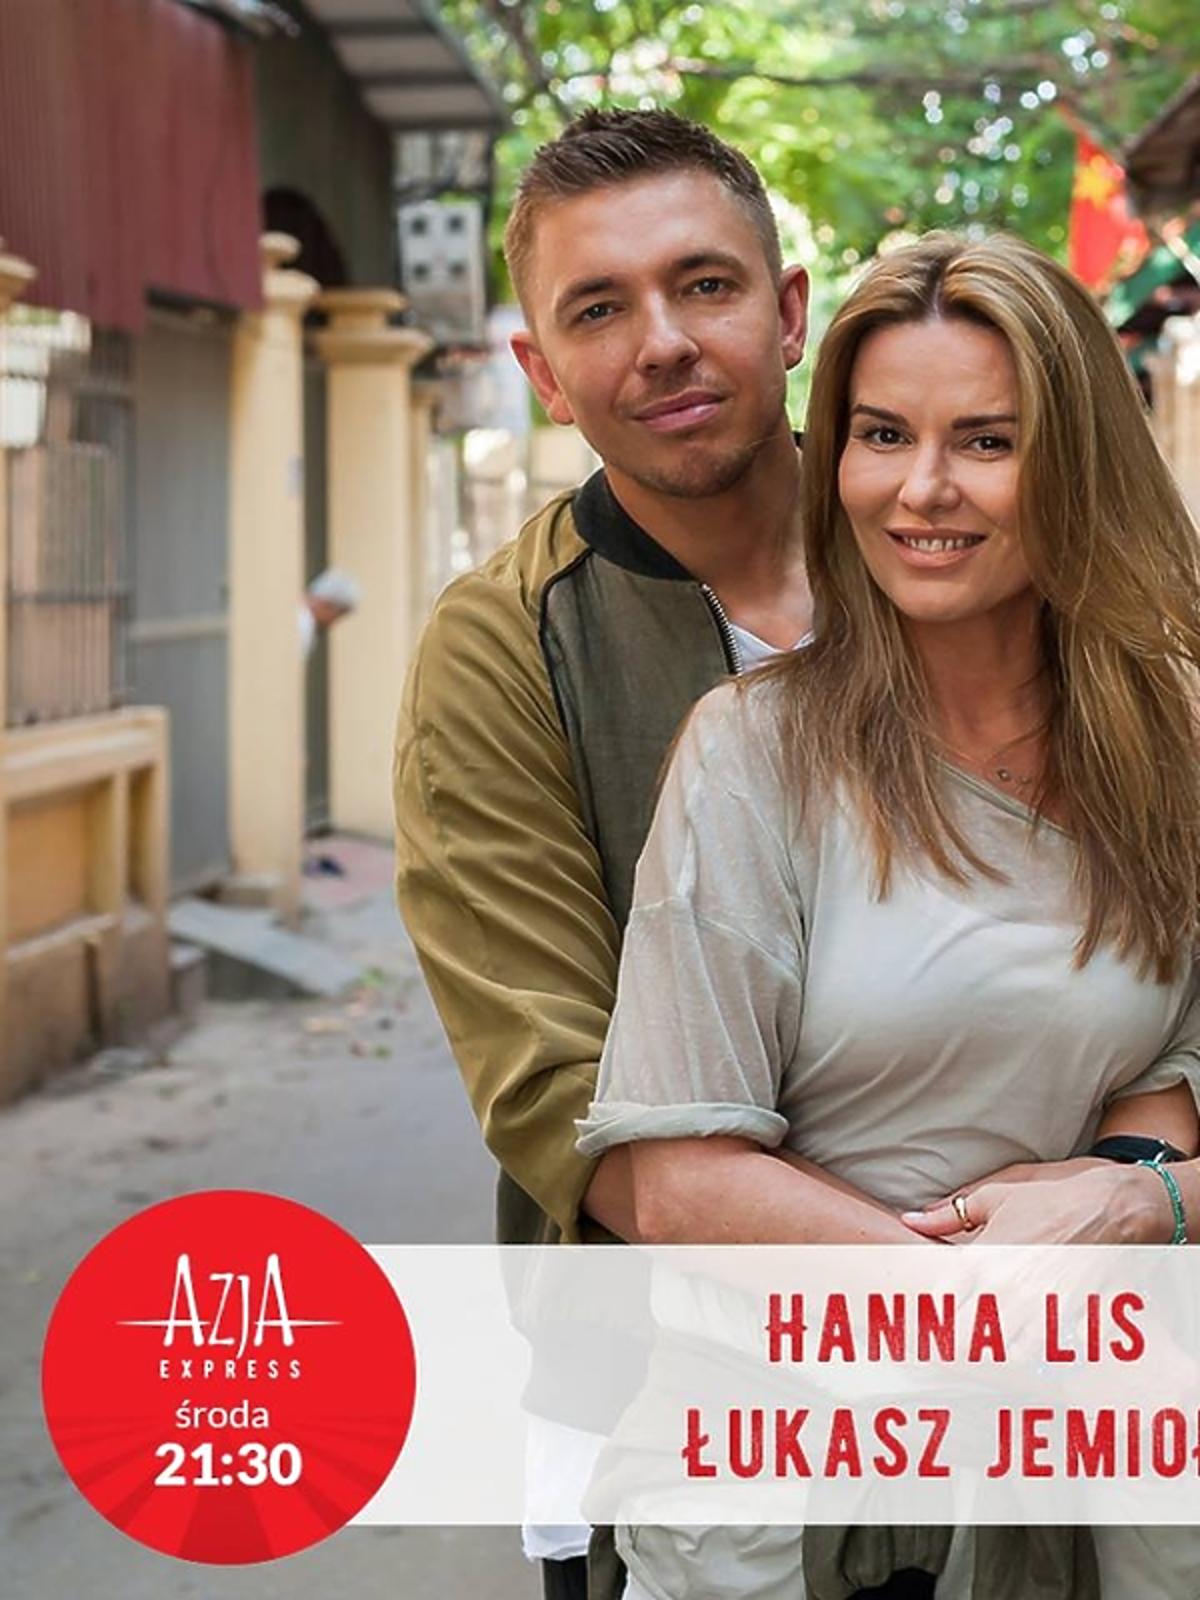 Hanna Lis i Łukasz Jemioł w programie Azja Express